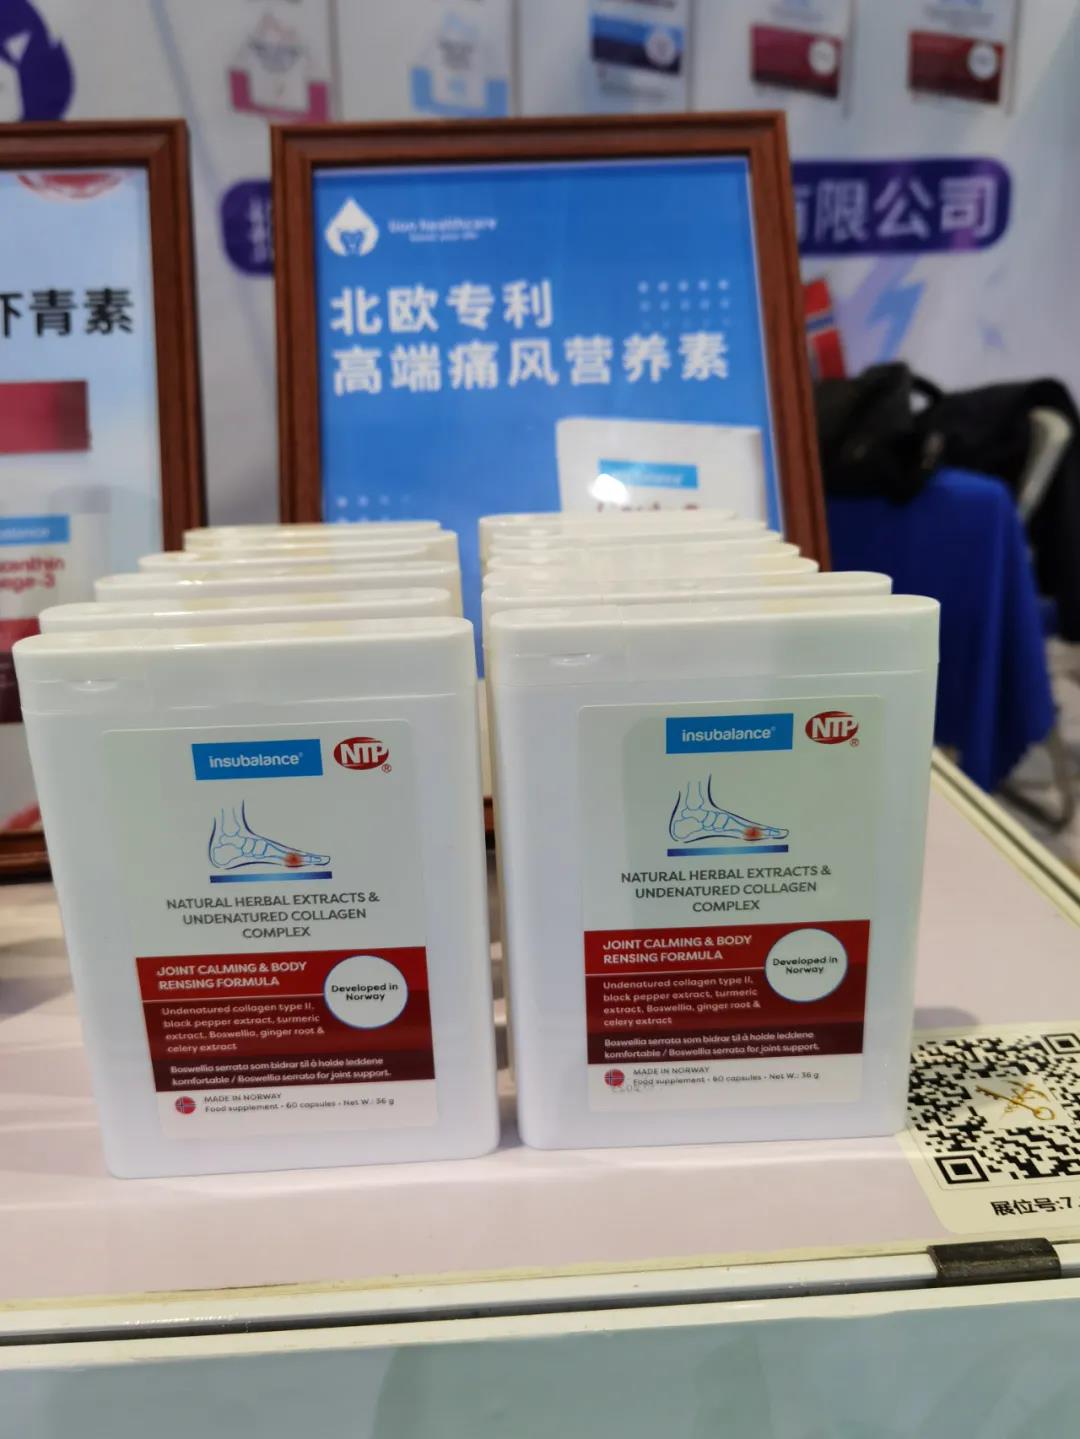 鲁南制药博糖宜素亮相第四届中国国际进口博览会